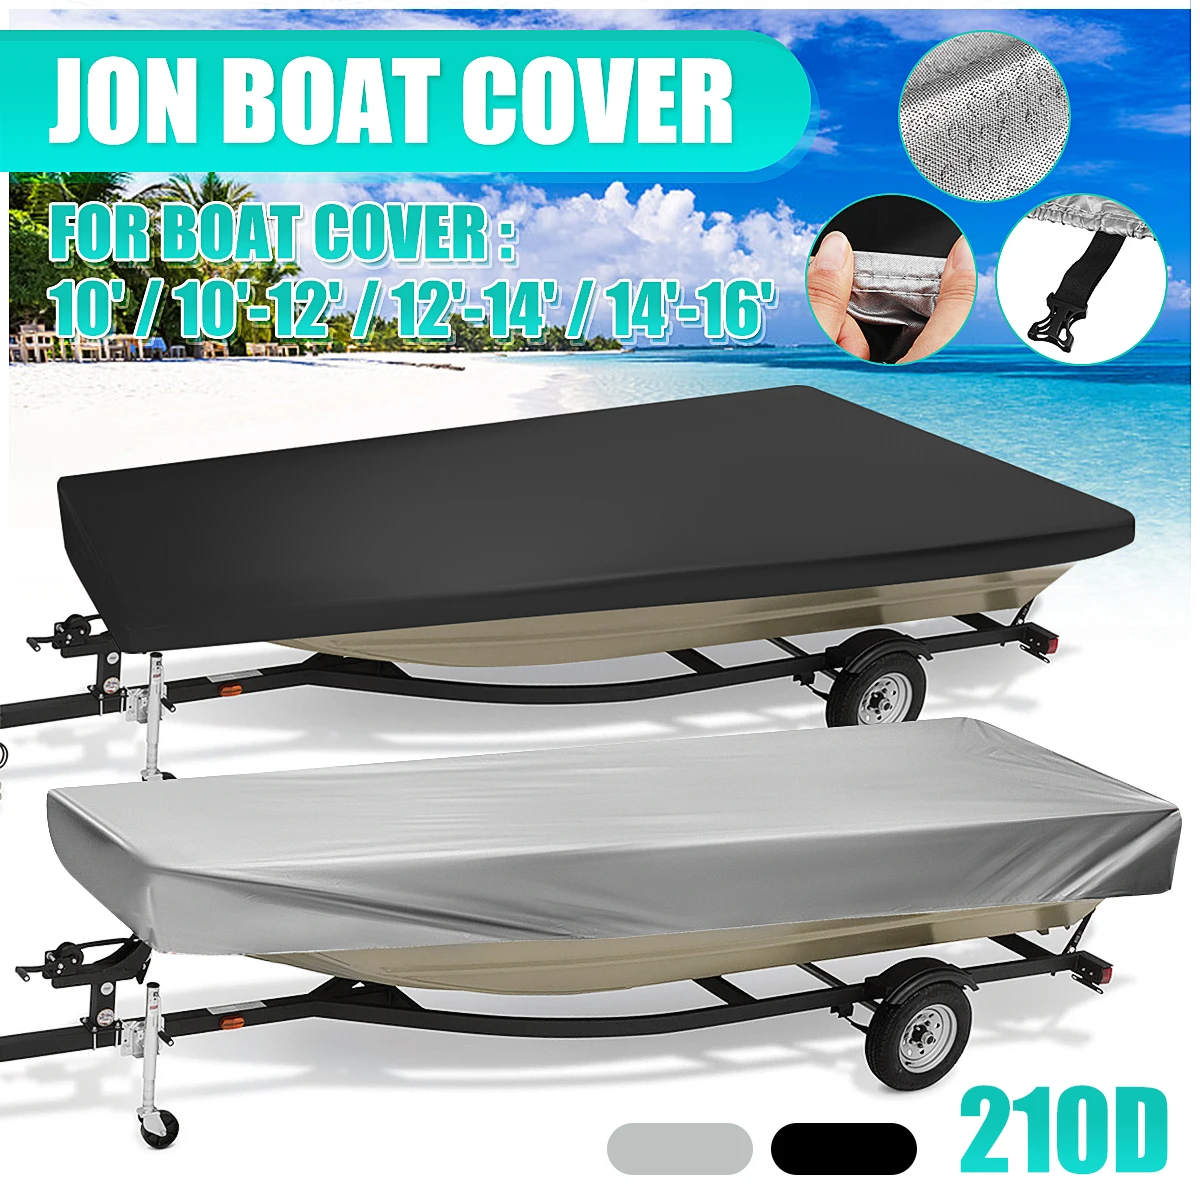 https://ae01.alicdn.com/kf/S9604418f49124f4a865d1c1d28f4a938x/210D-Trailerable-Jon-Boat-Cover-Heavy-Duty-Open-Boat-Cover-Fishing-Ski-Waterproof-Sunproof-Anti-UV.jpg